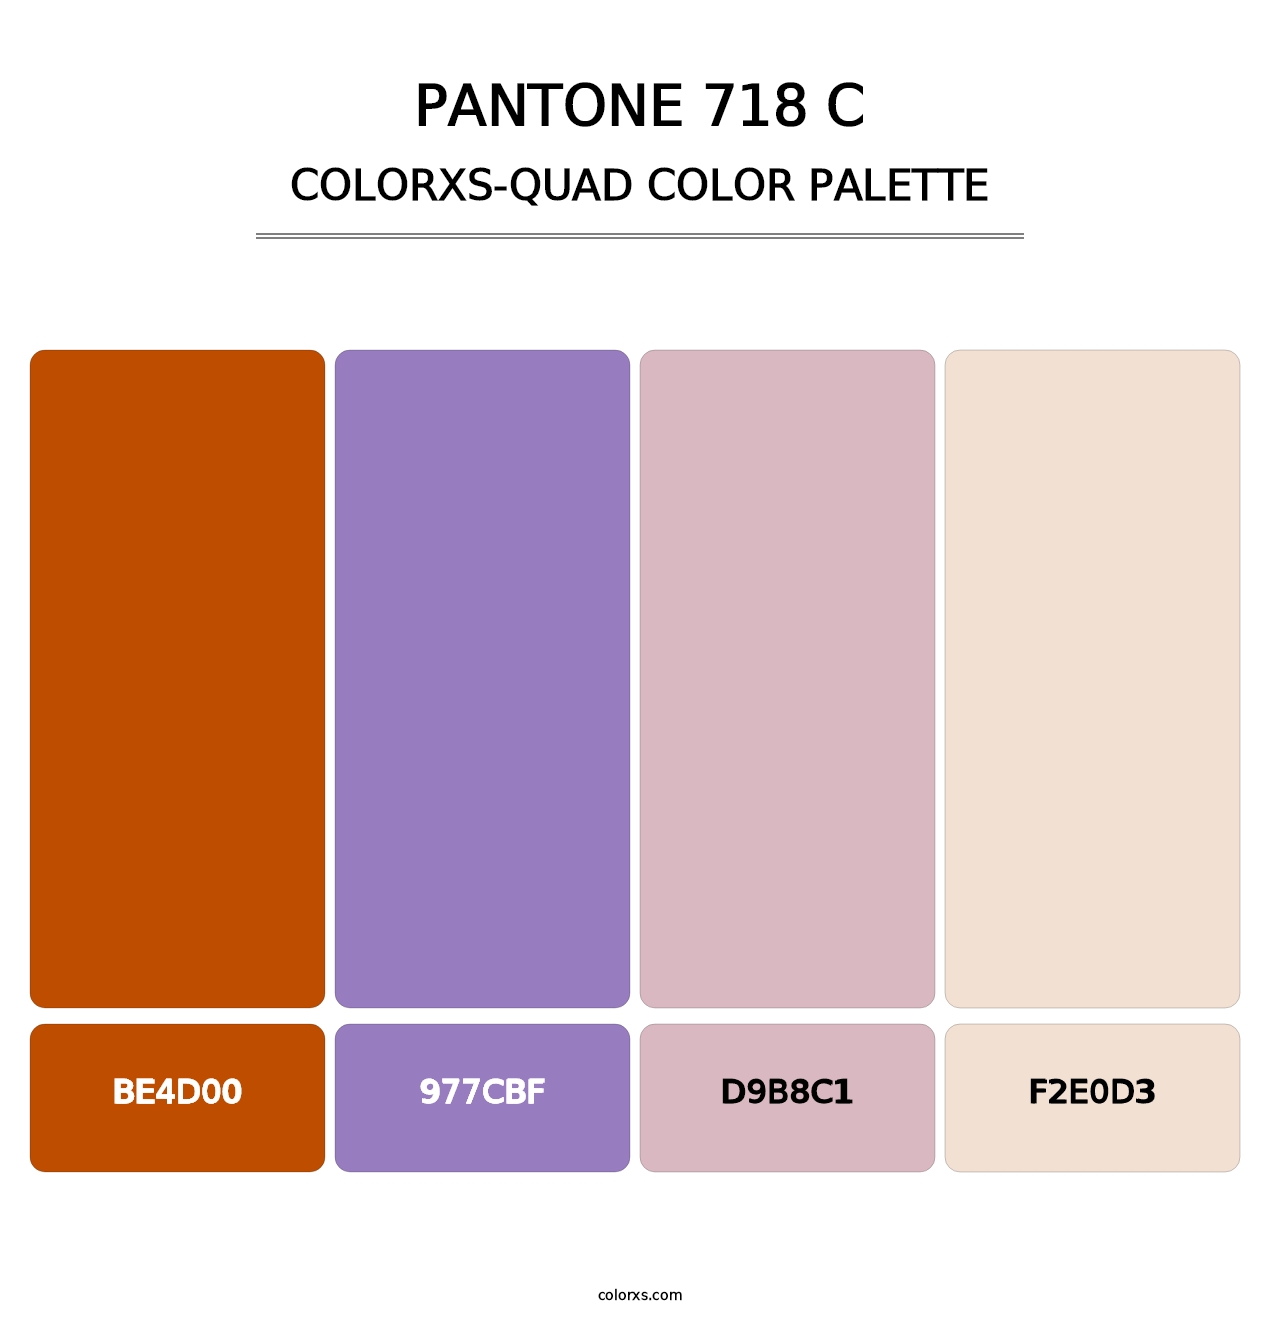 PANTONE 718 C - Colorxs Quad Palette